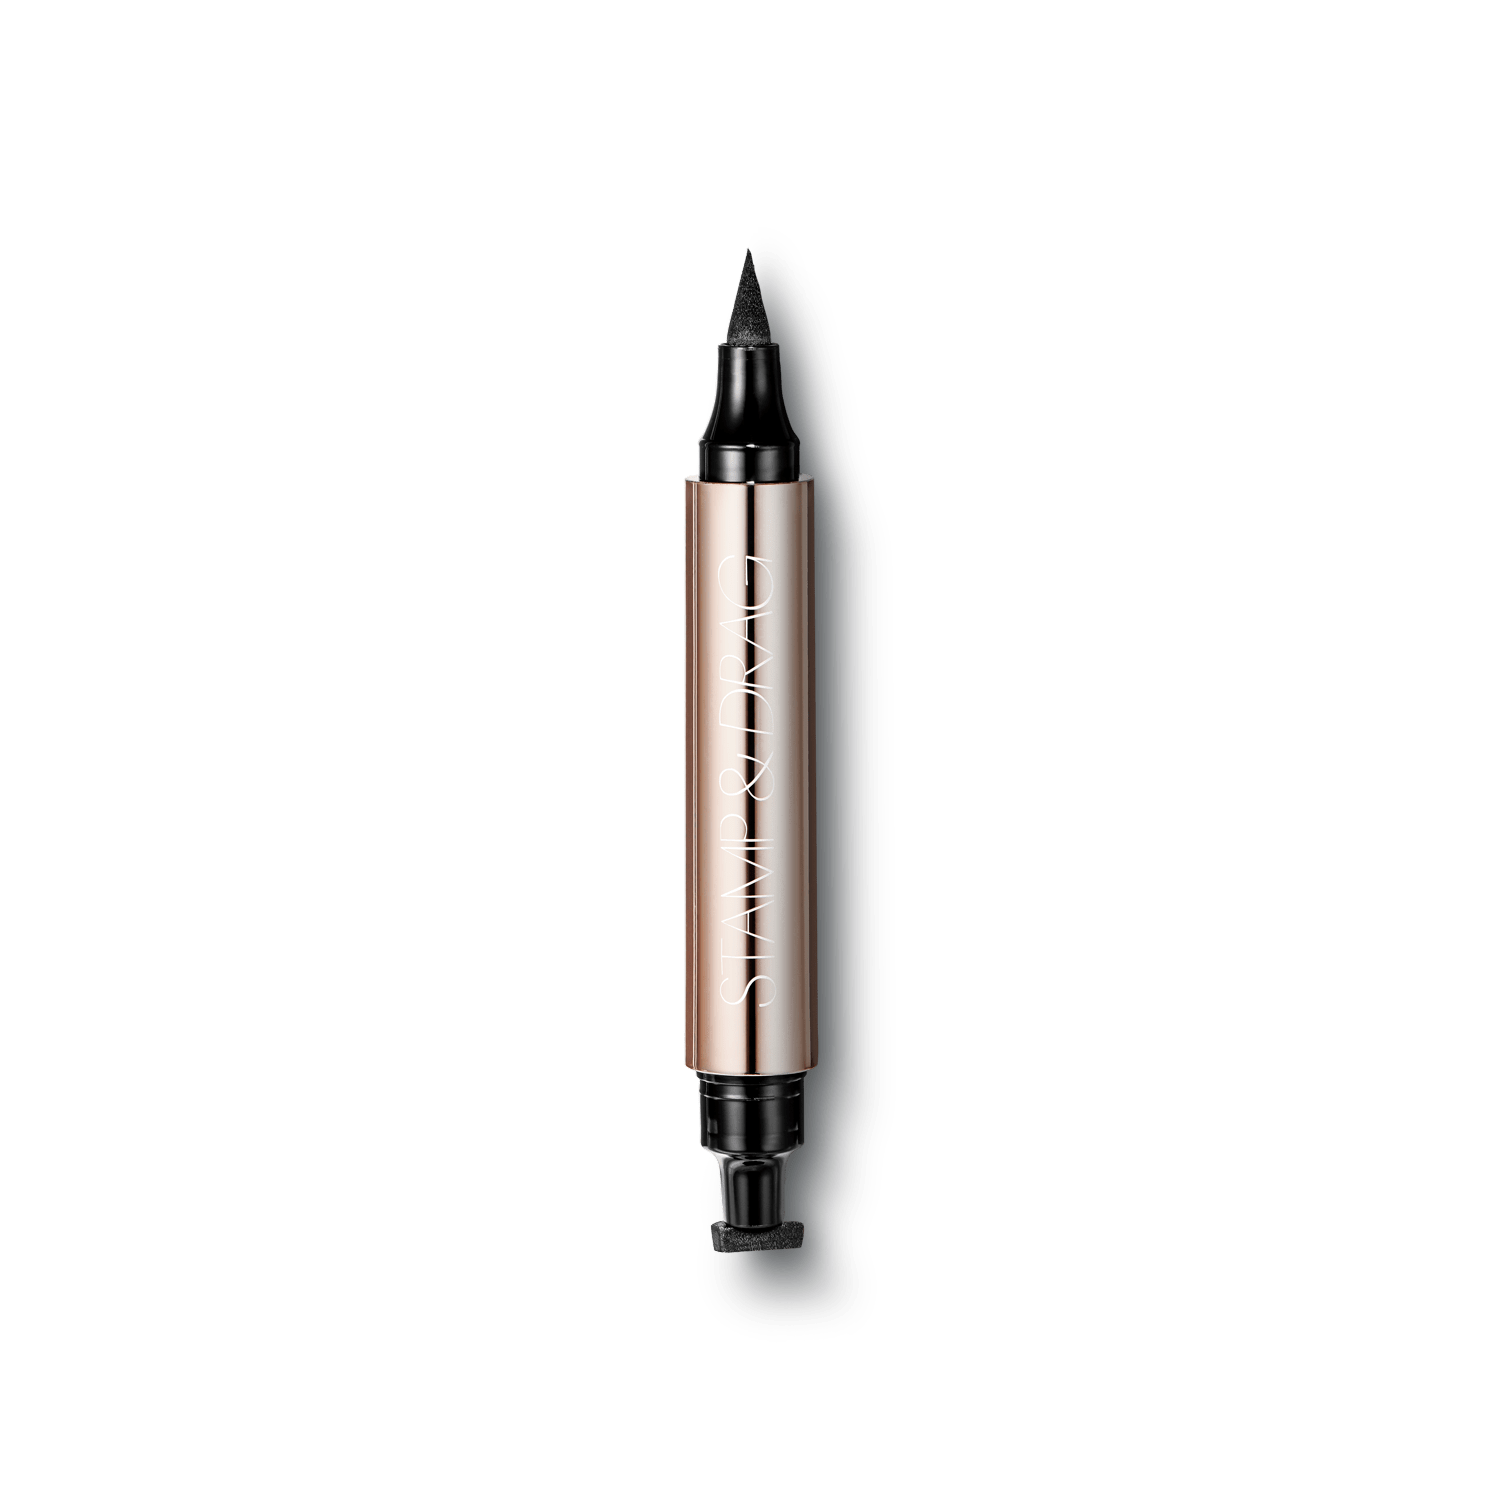 Stamp and Drag Liner | Eyeliner Pen & Stamp